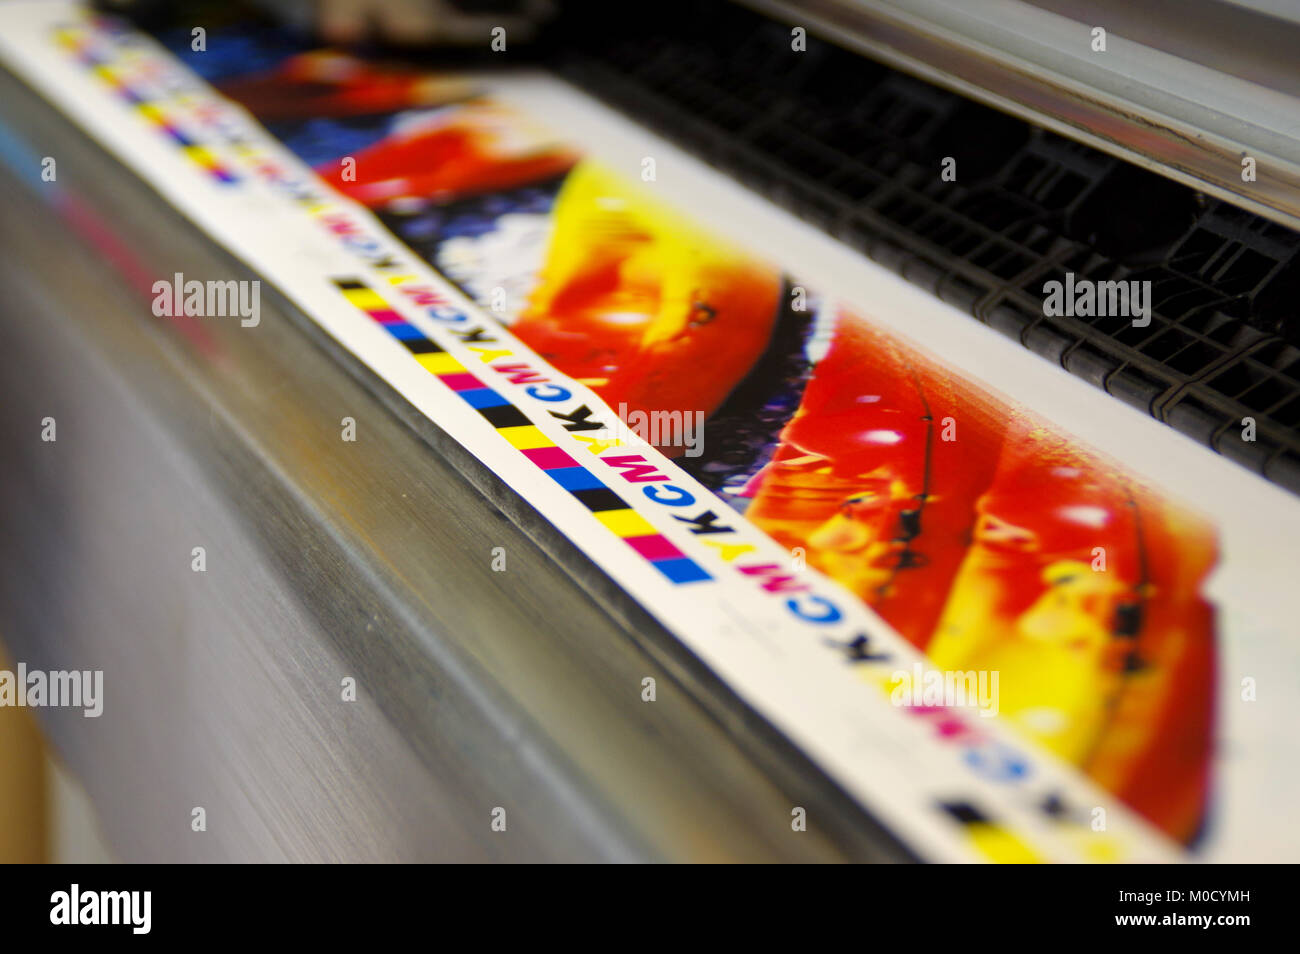 Plóter de inyección de tinta marca CMYK de impresión sobre papel blanco. Máquina impresora digital de gran tamaño. Foto de stock